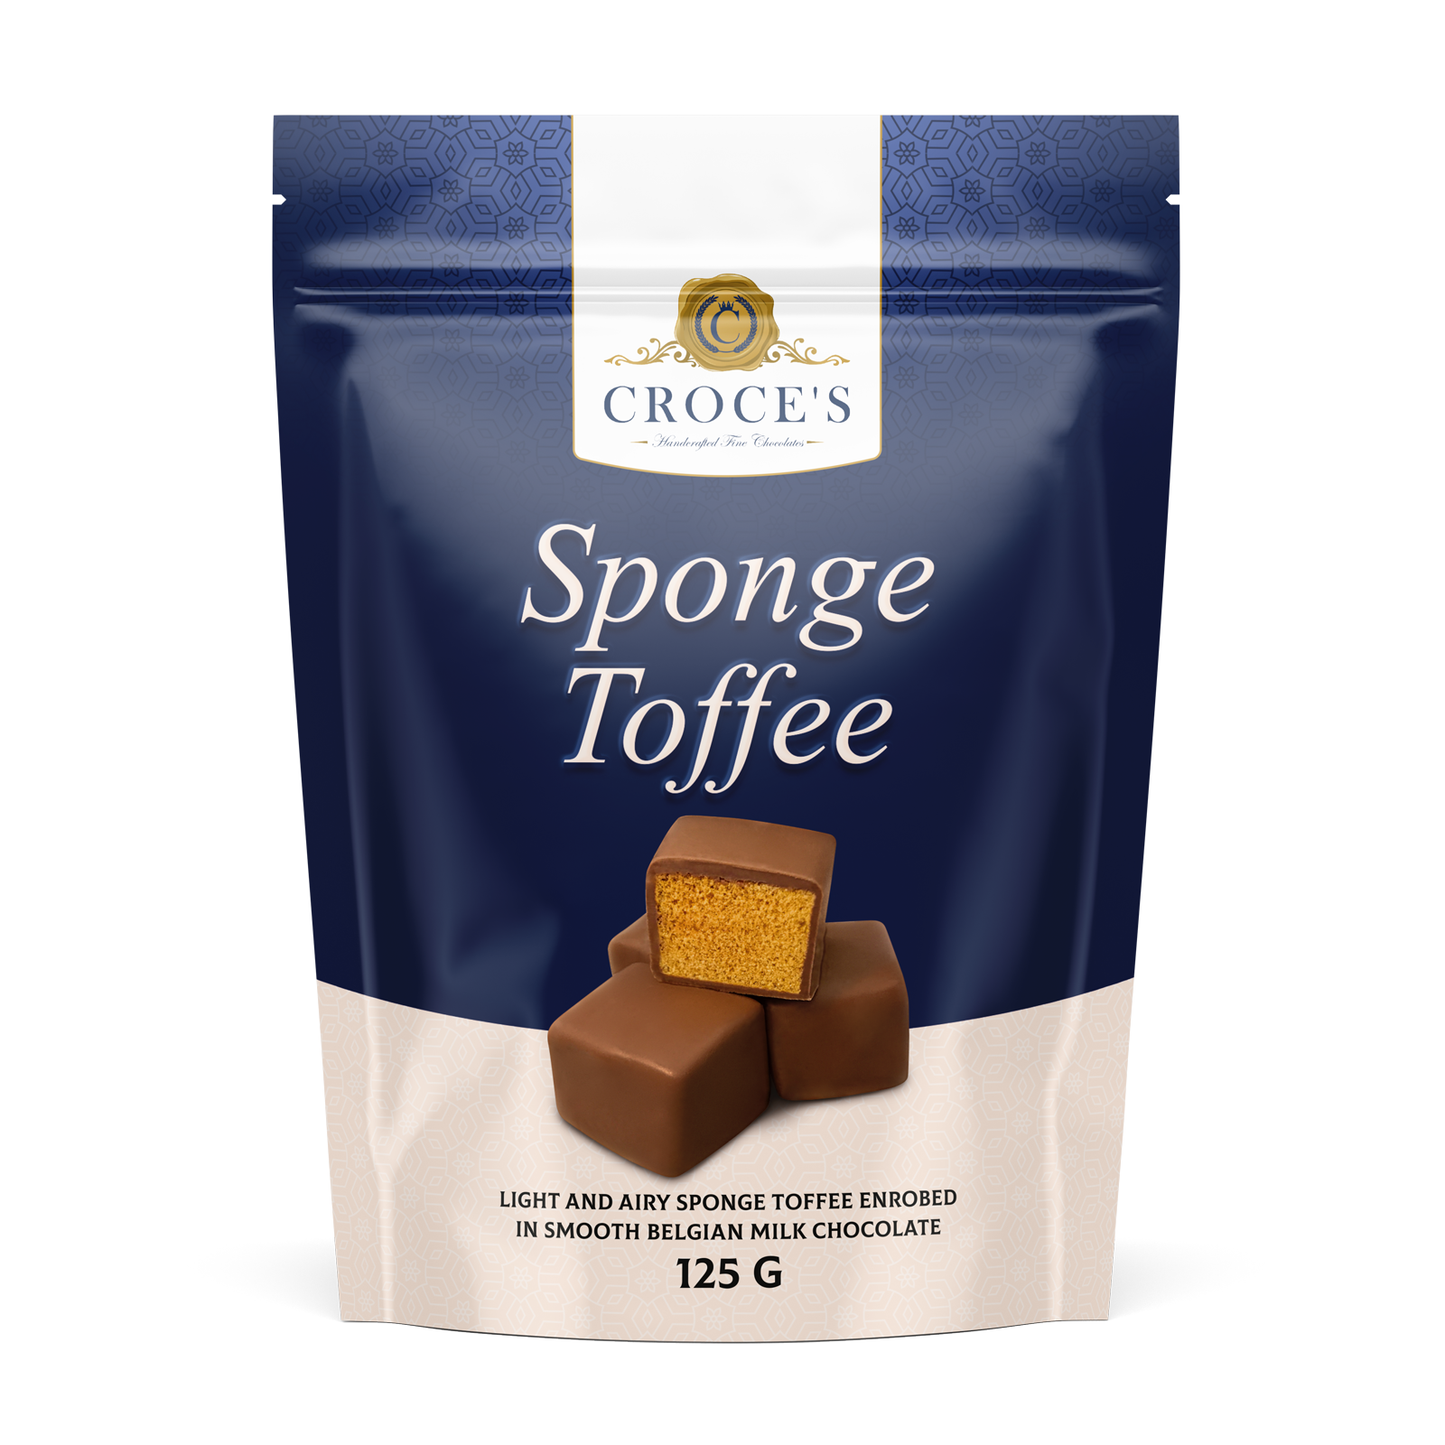 Croce's Sponge Toffee